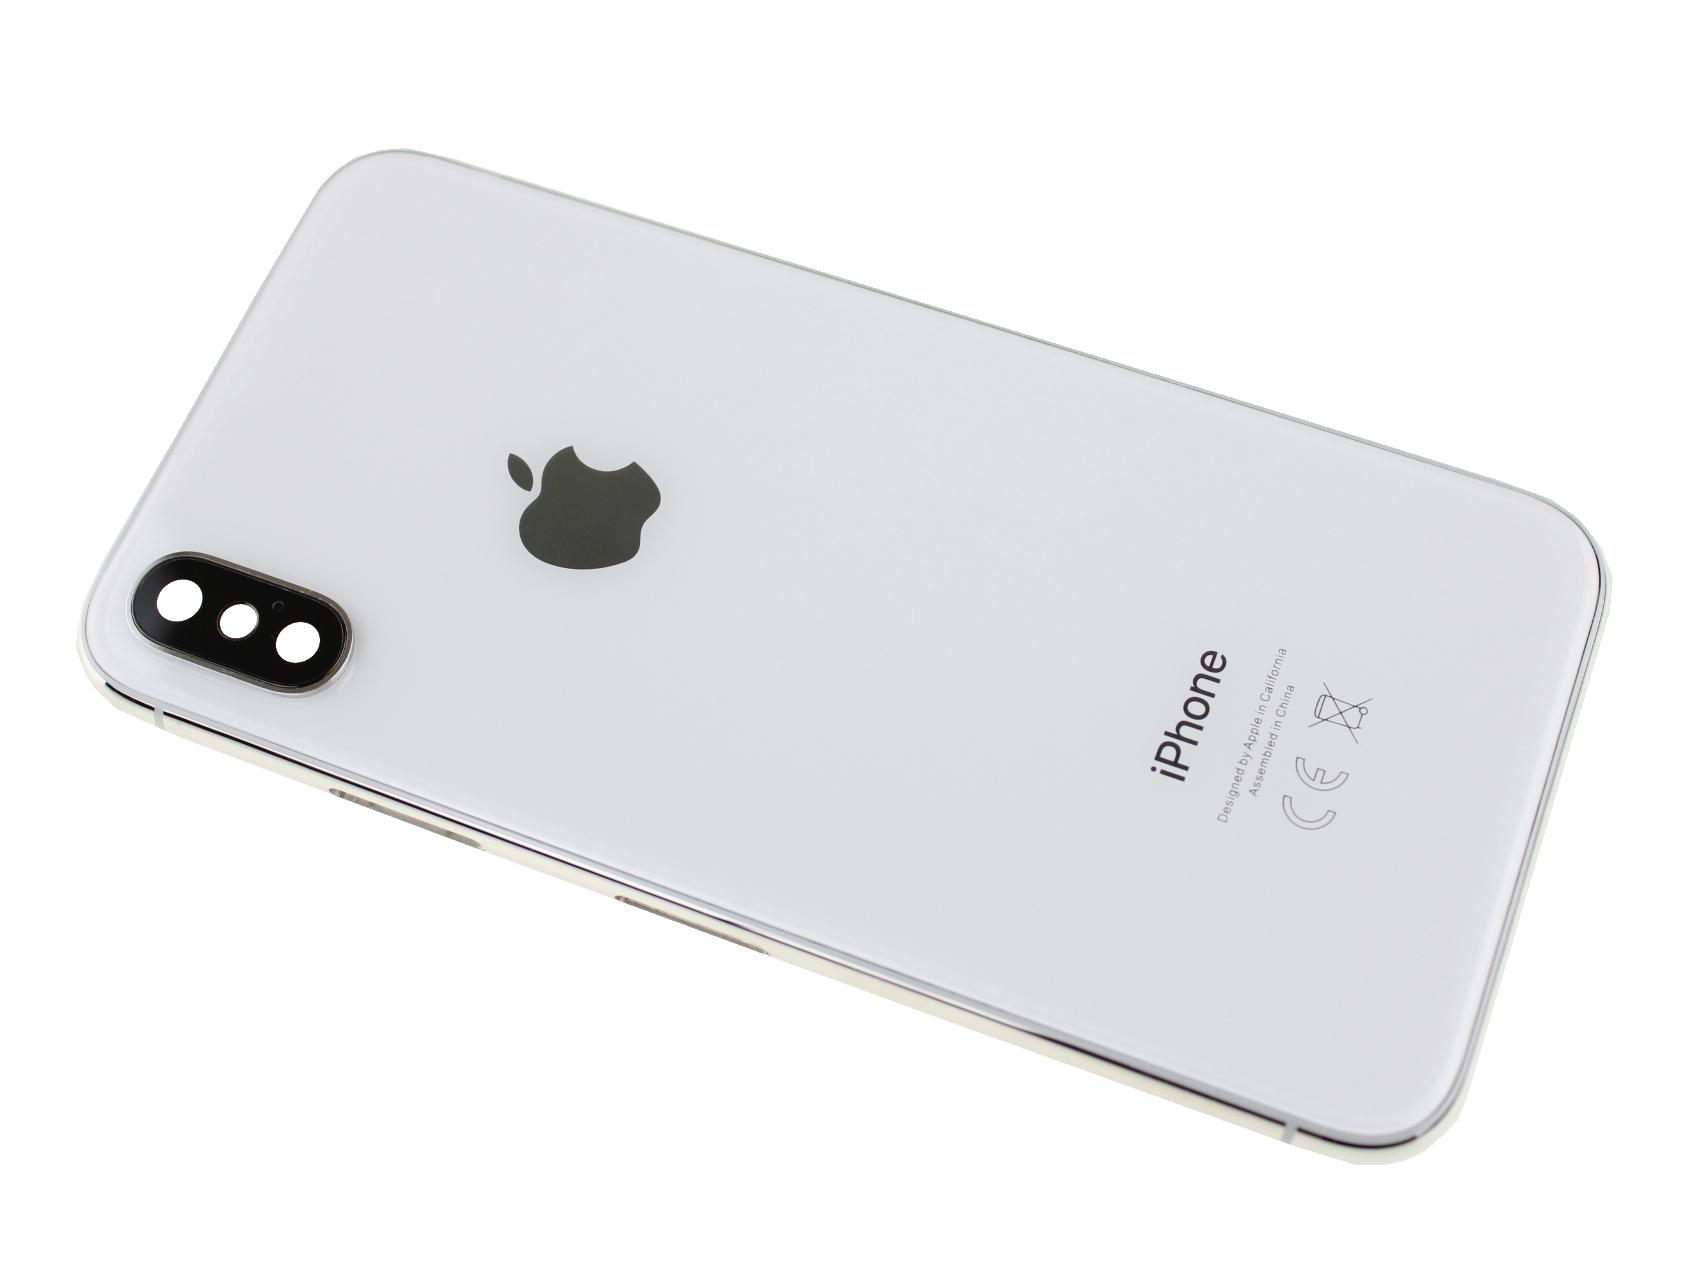 Originál Korpus + Kryt baterie iPhone X bílý